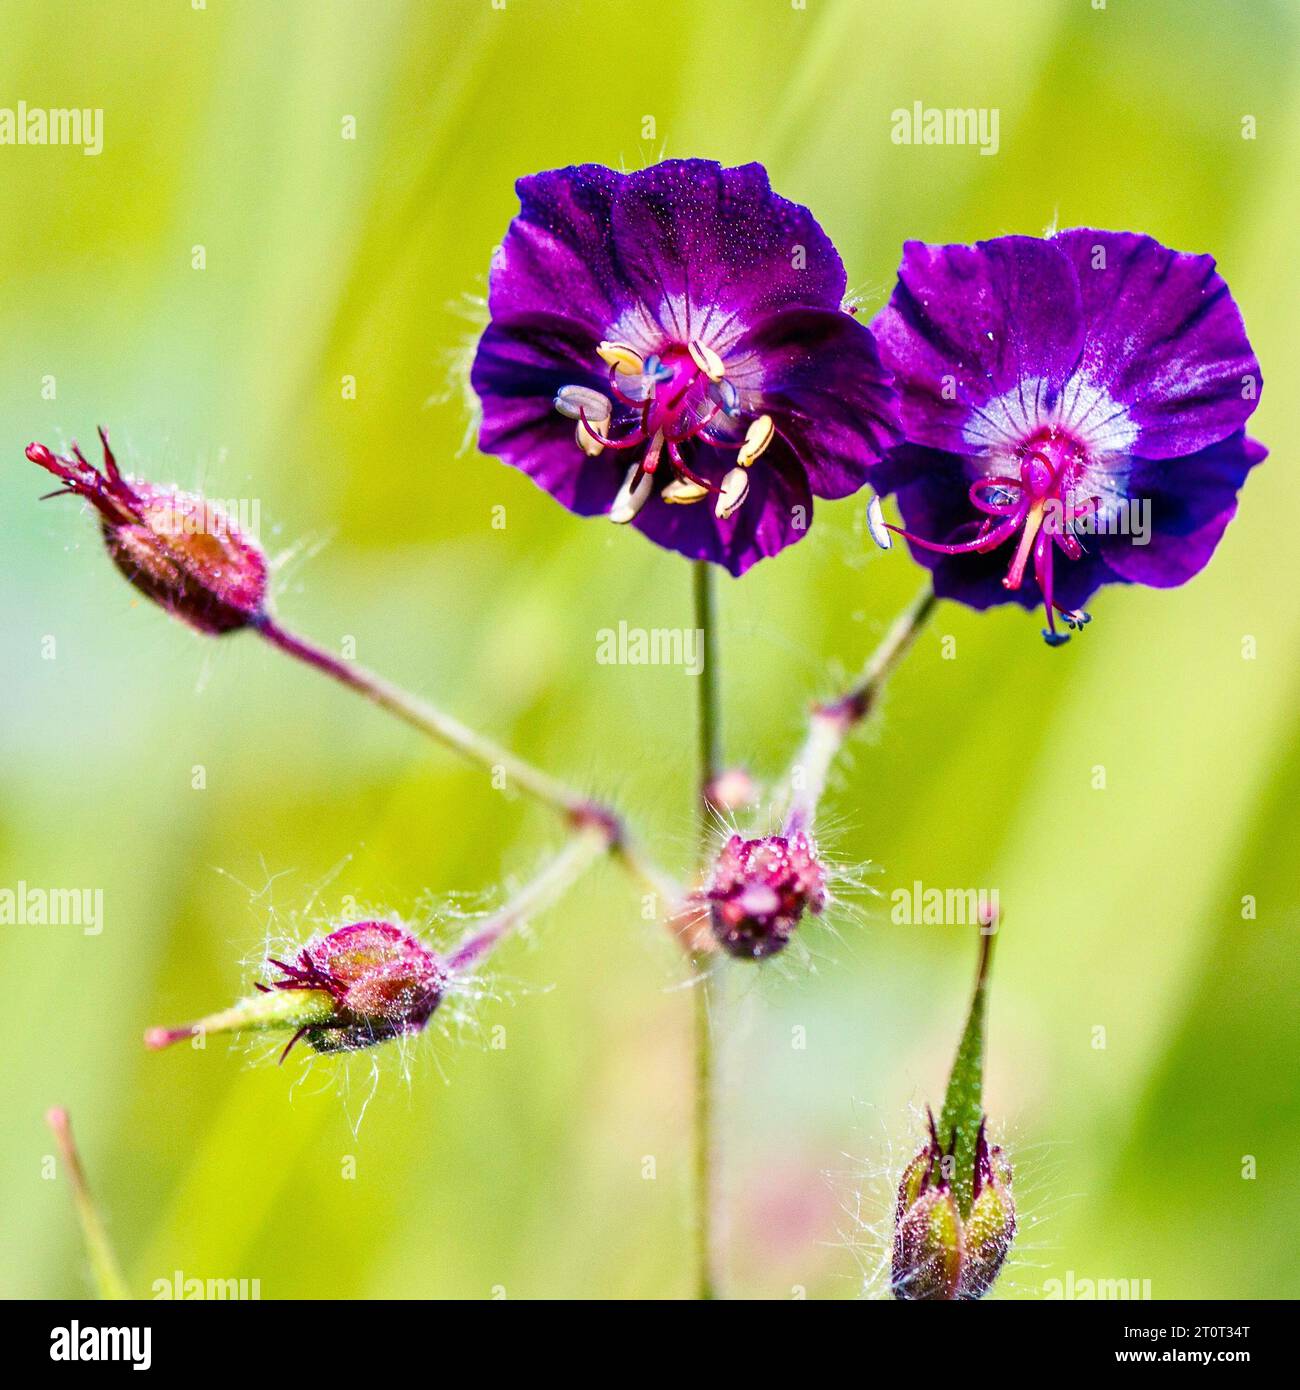 Beautiful wildflowers similar to meadow geranium. Stock Photo